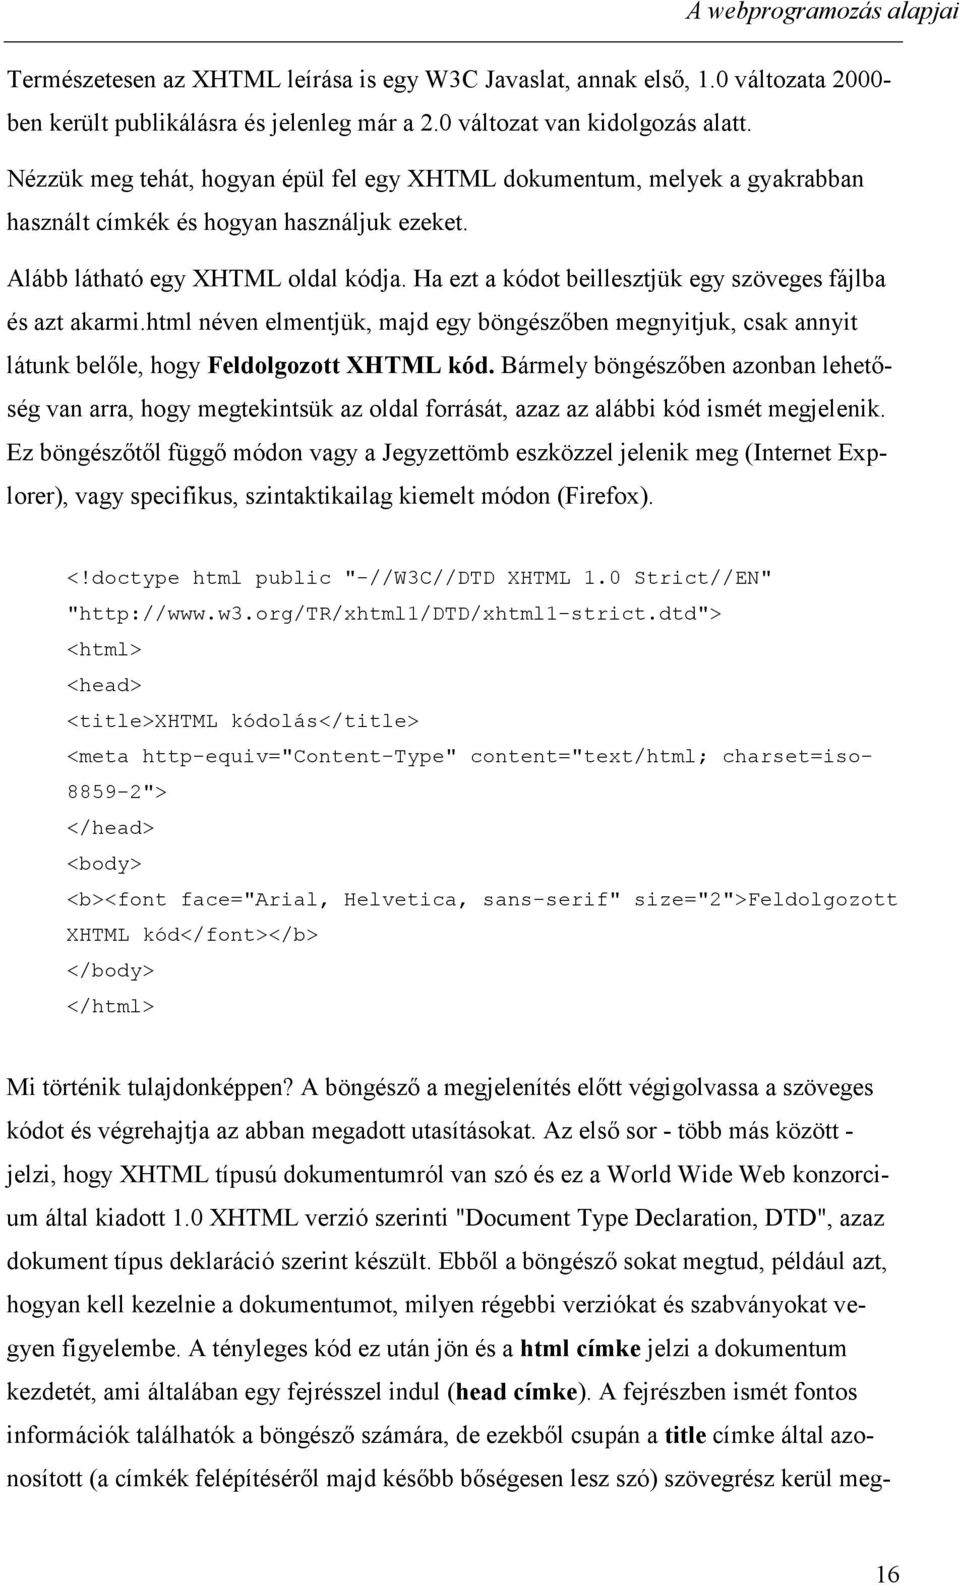 Ha ezt a kódot beillesztjük egy szöveges fájlba és azt akarmi.html néven elmentjük, majd egy böngészőben megnyitjuk, csak annyit látunk belőle, hogy Feldolgozott XHTML kód.